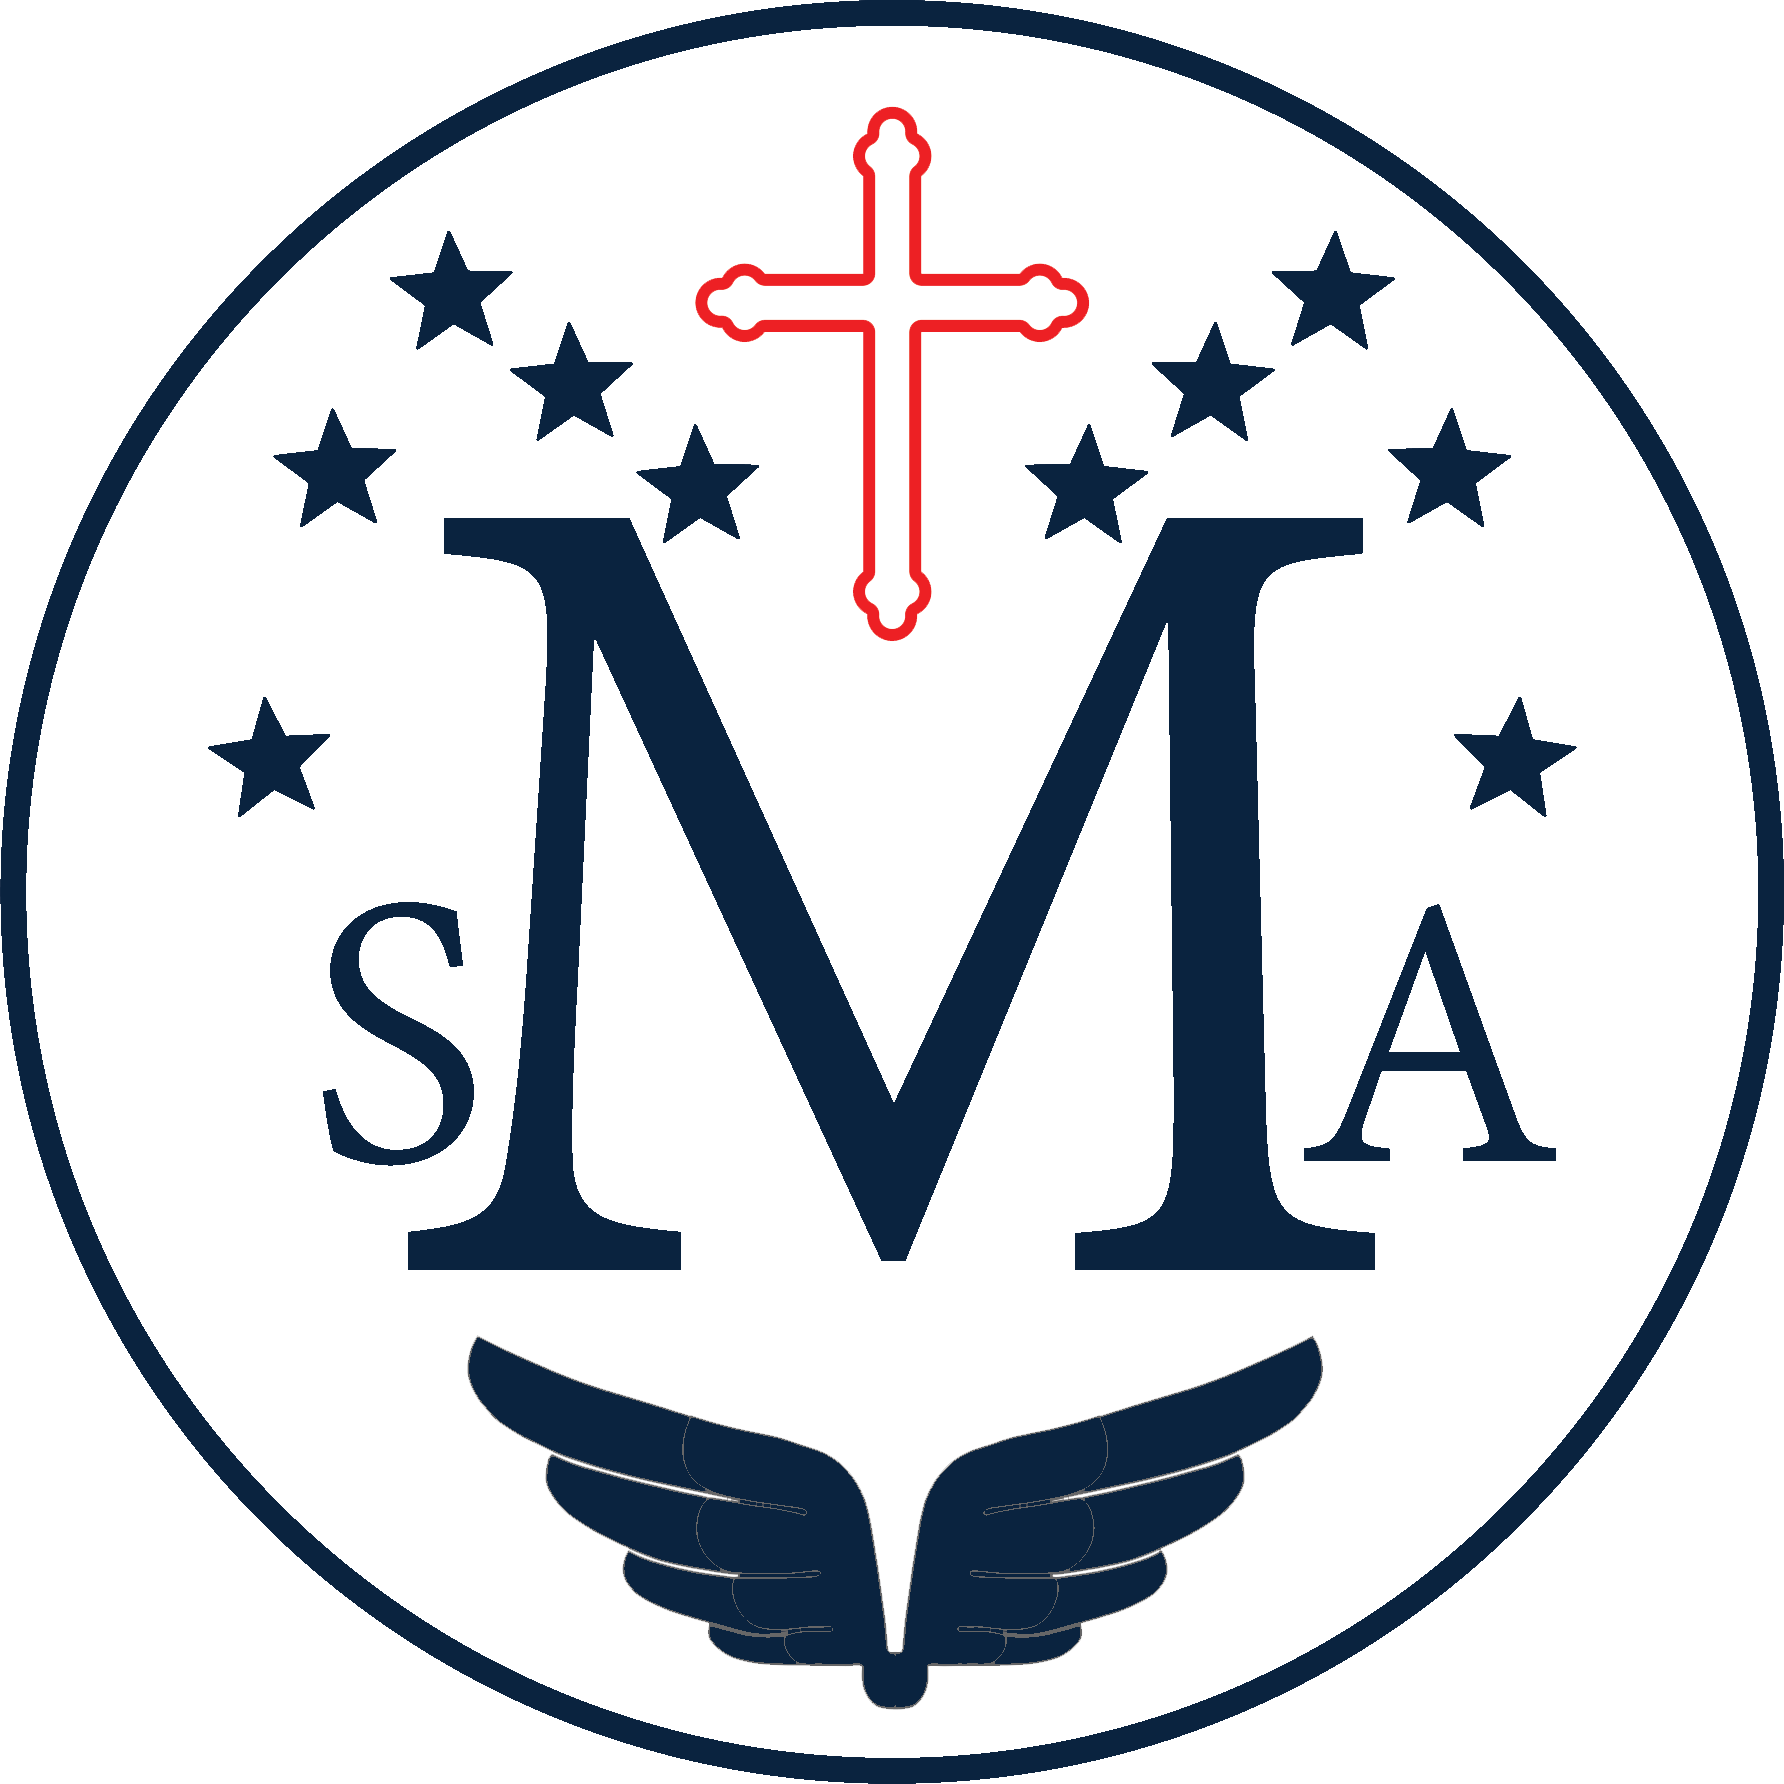 St. Mary Academy